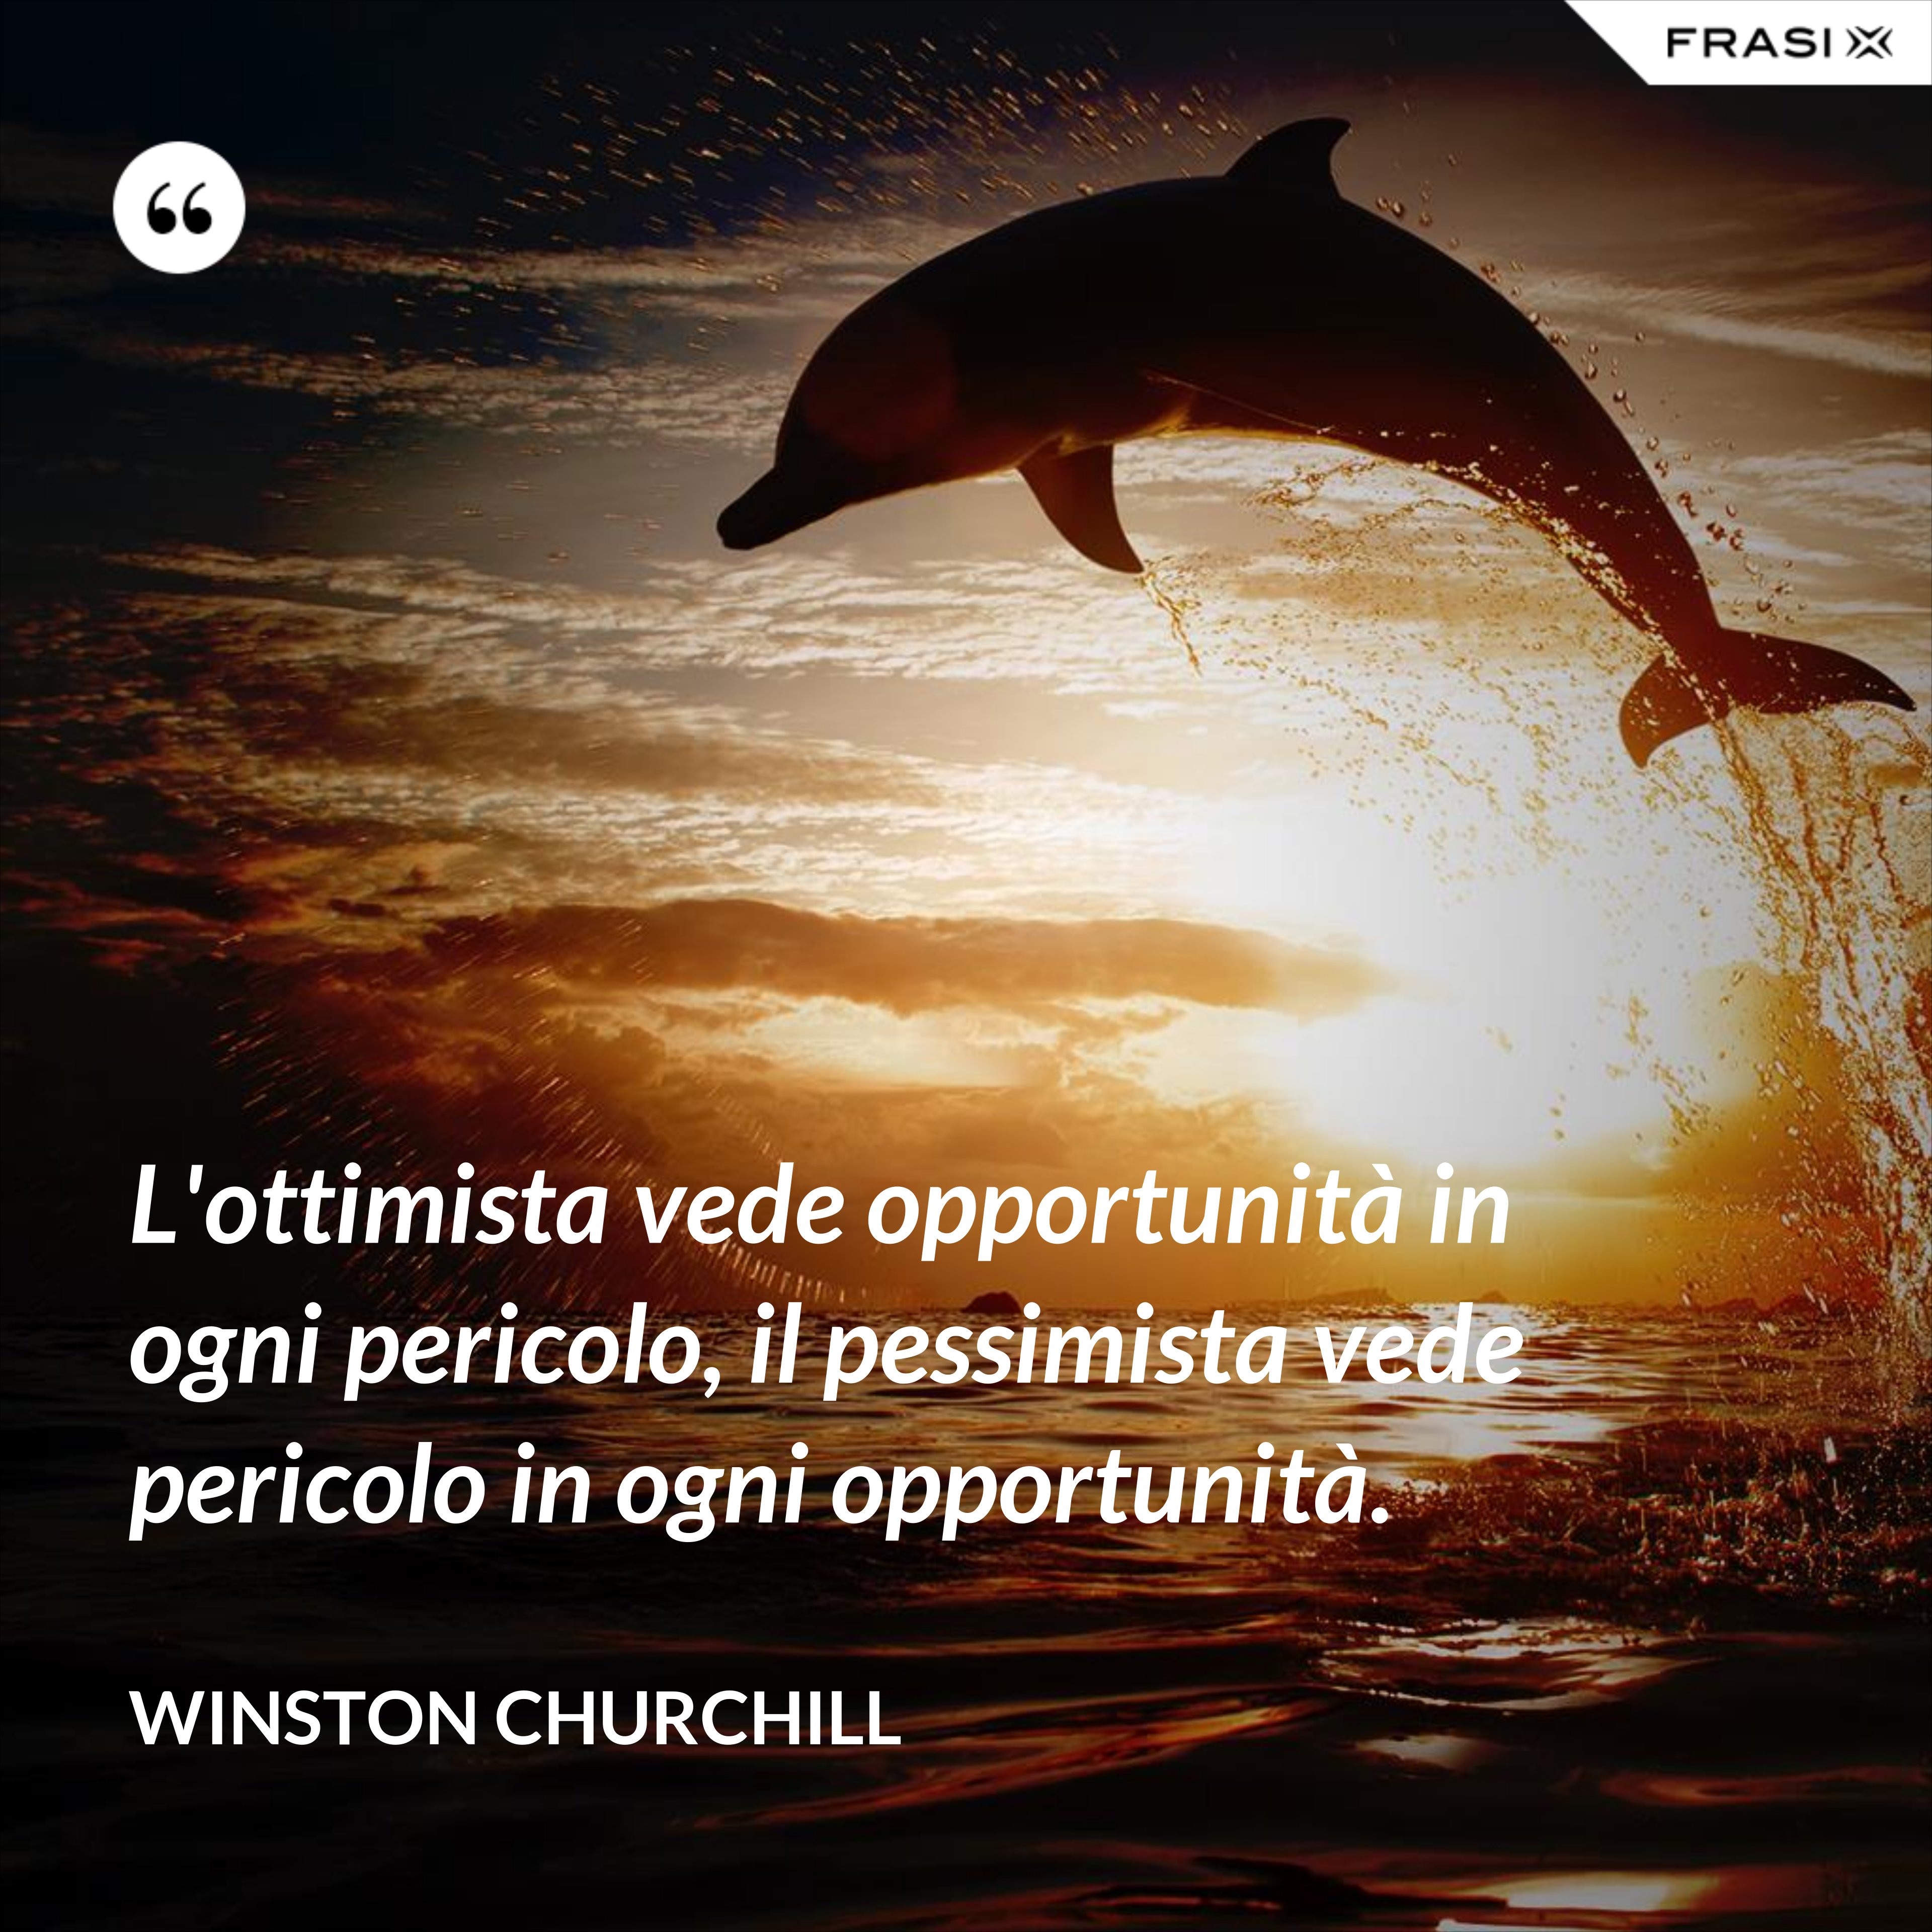 L'ottimista vede opportunità in ogni pericolo, il pessimista vede pericolo in ogni opportunità. - Winston Churchill